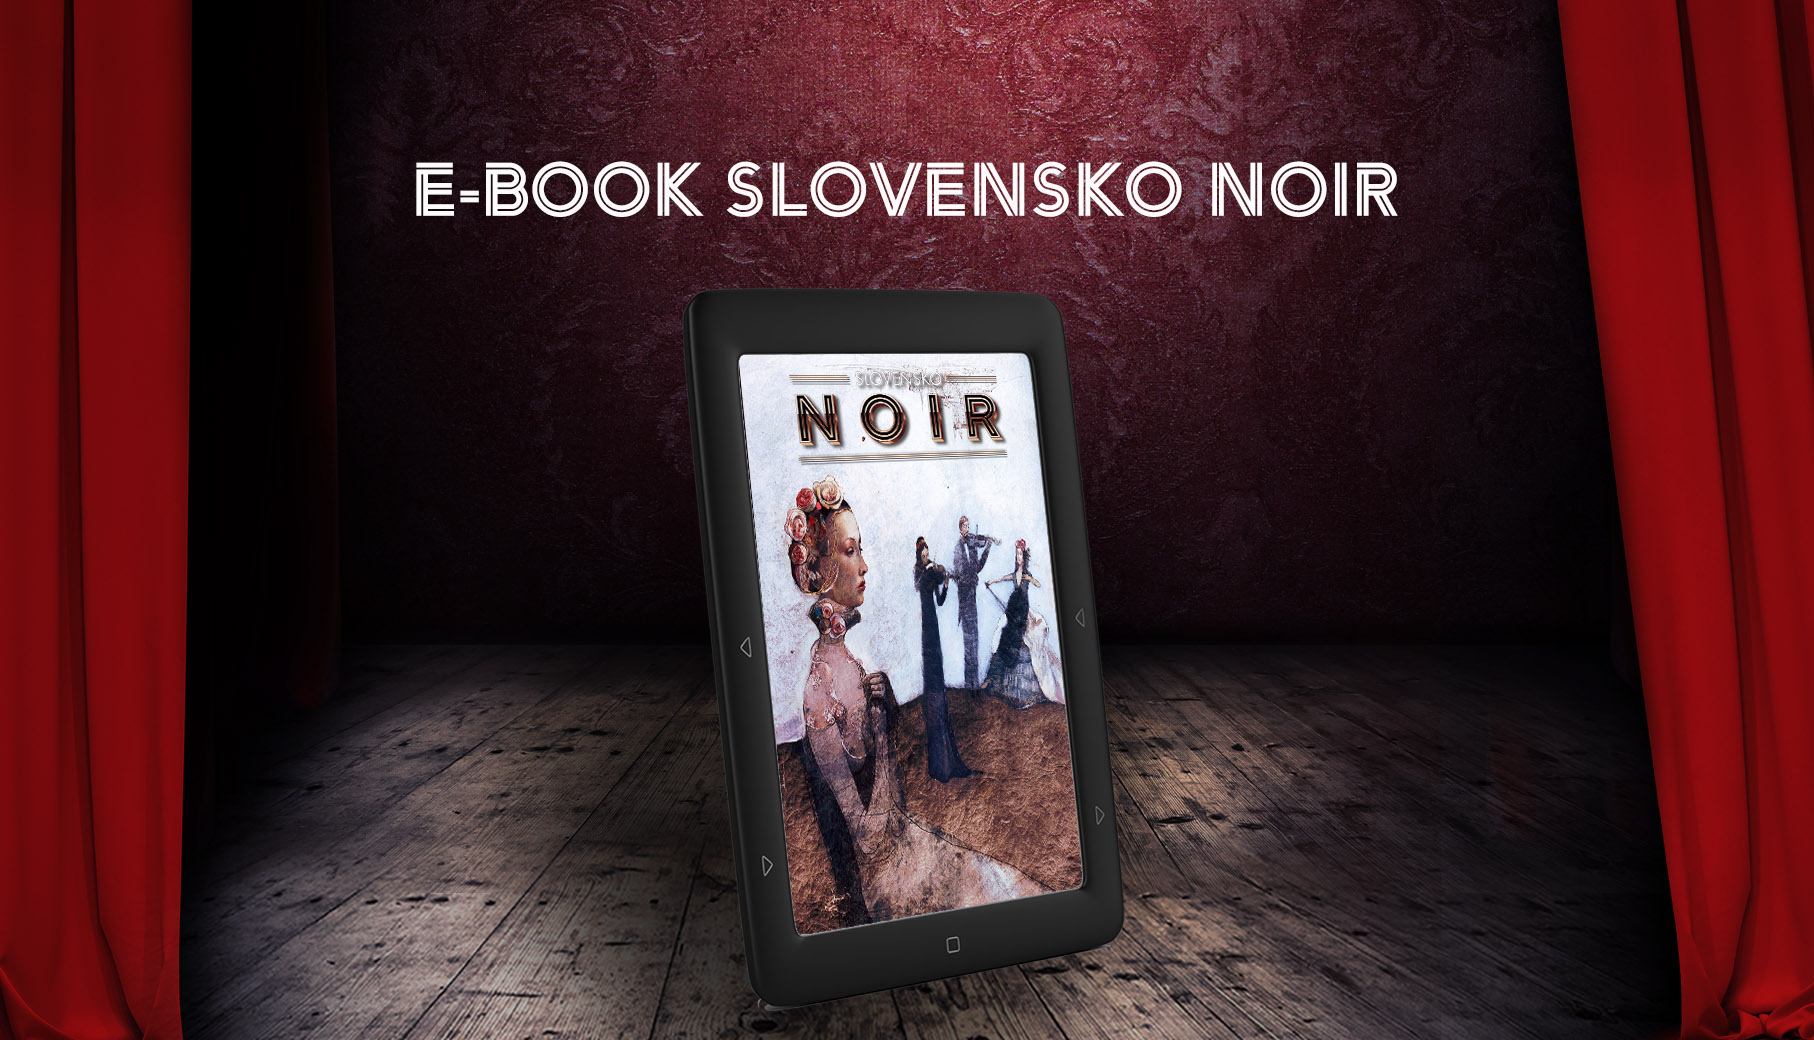 Slovensko NOIR / E-book (SK)